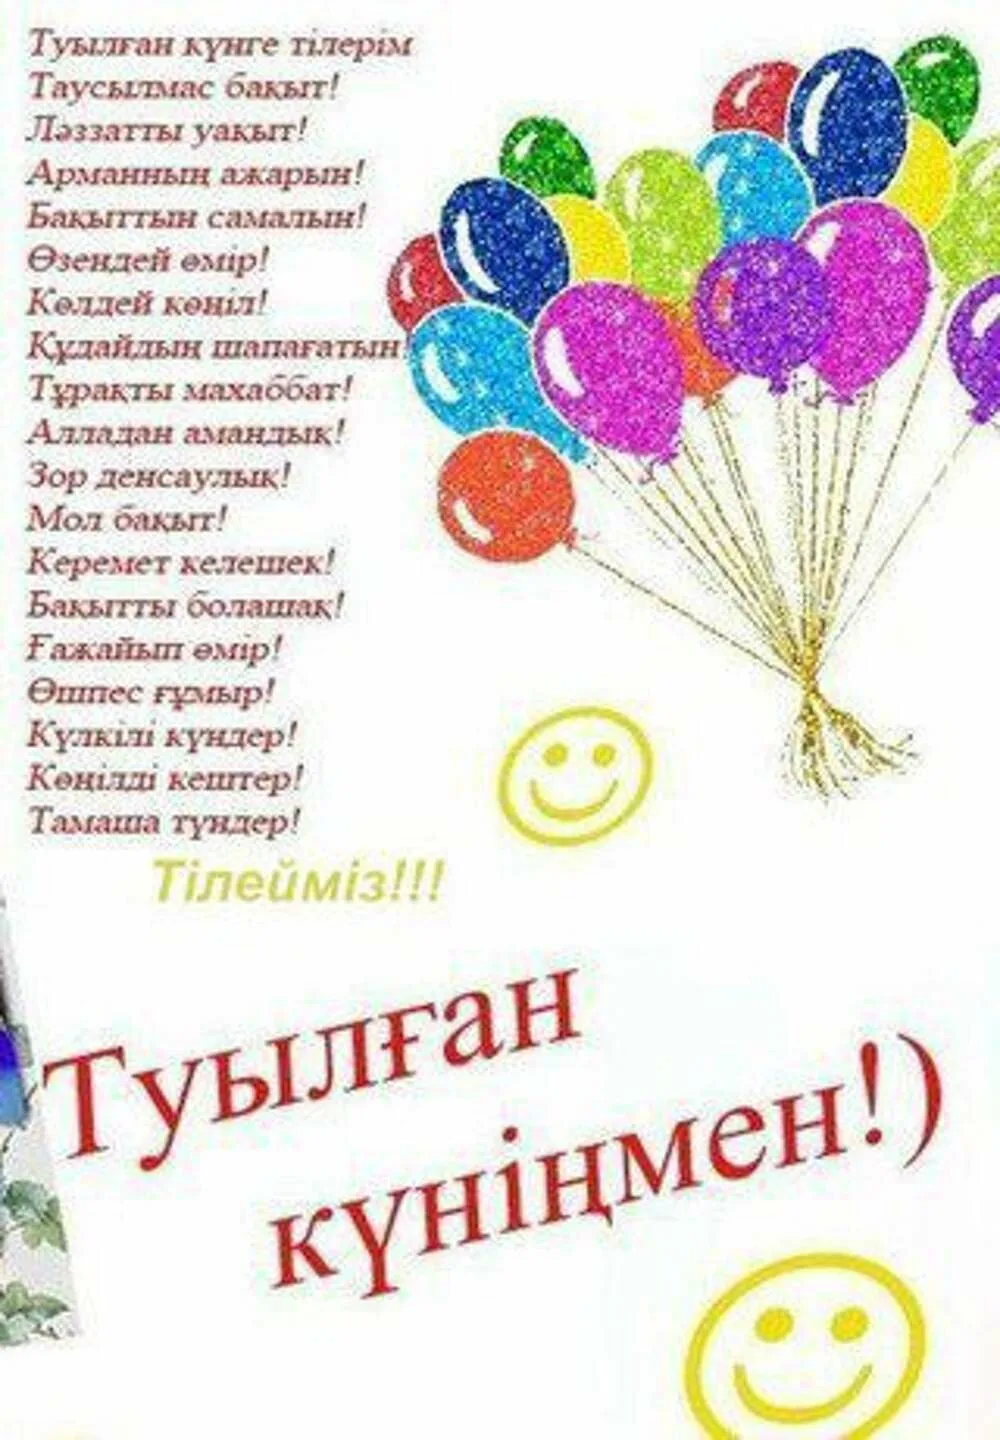 Фото Поздравления с днем рождения на казахском языке #19